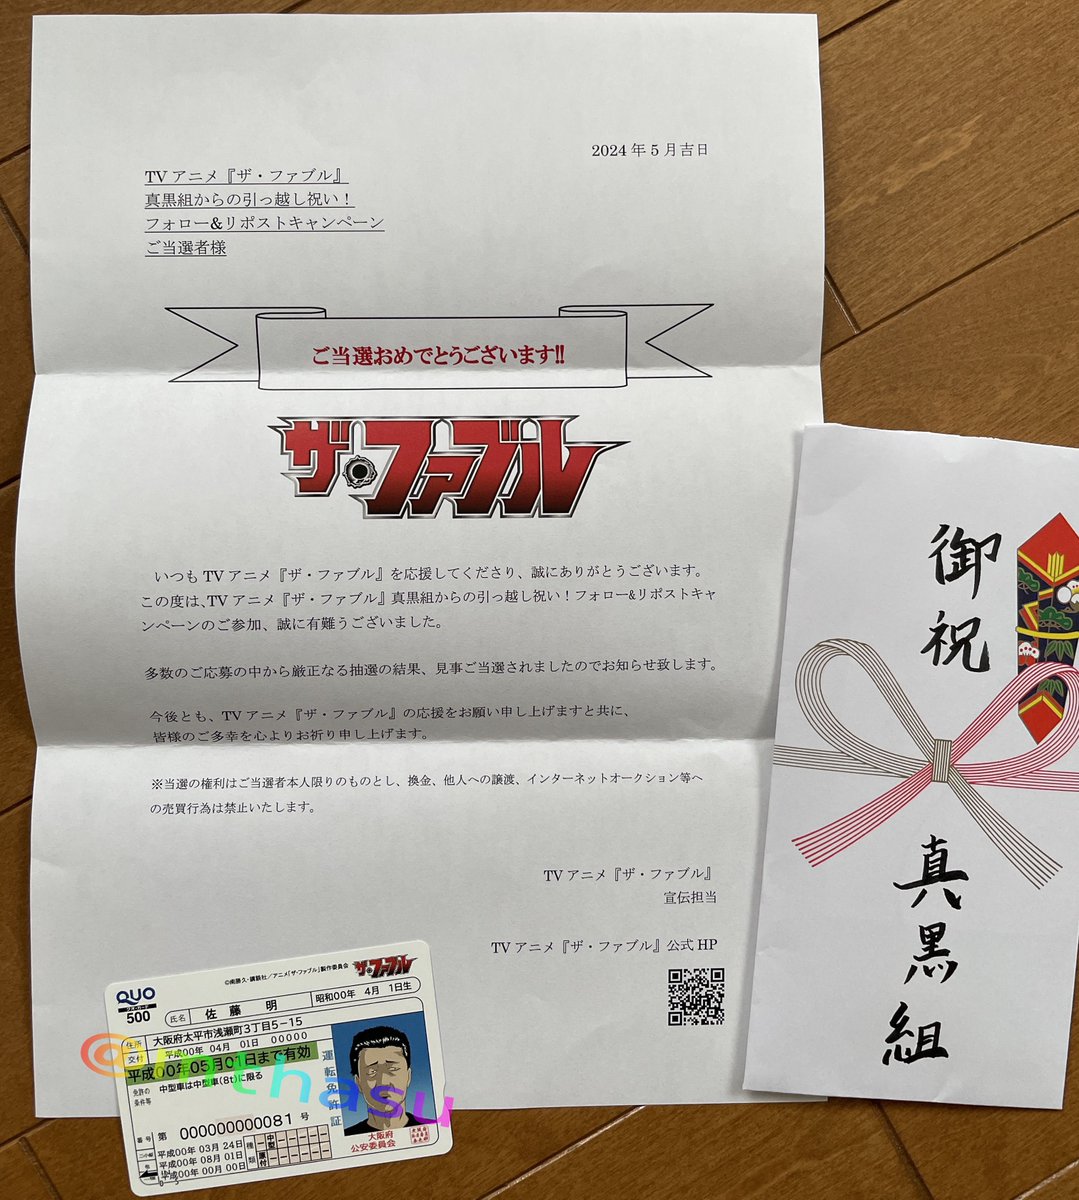 ザ・ファブルの佐藤明の偽造免許証風QUOカードが真黒組のご祝儀袋で届きました！これは嬉しい！ありがとうございます！
#アニメファブル